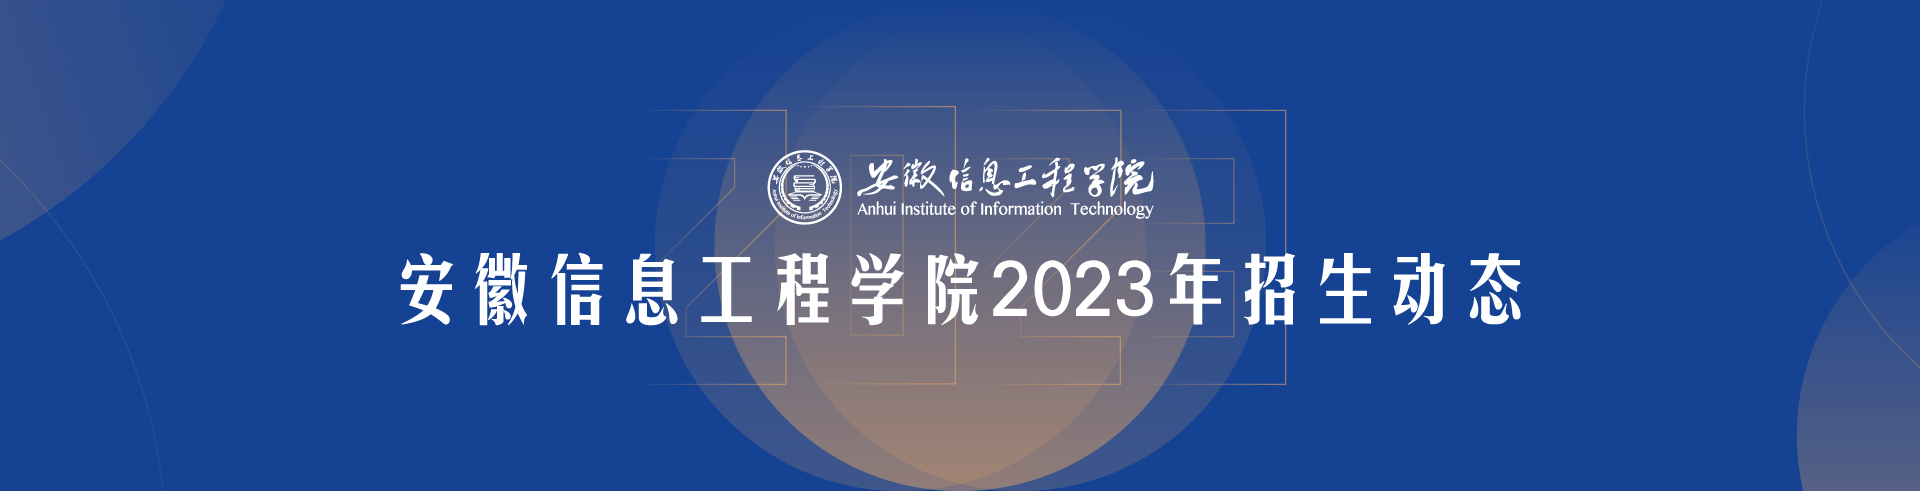 安徽信息工程学院2023年招生动态.jpg